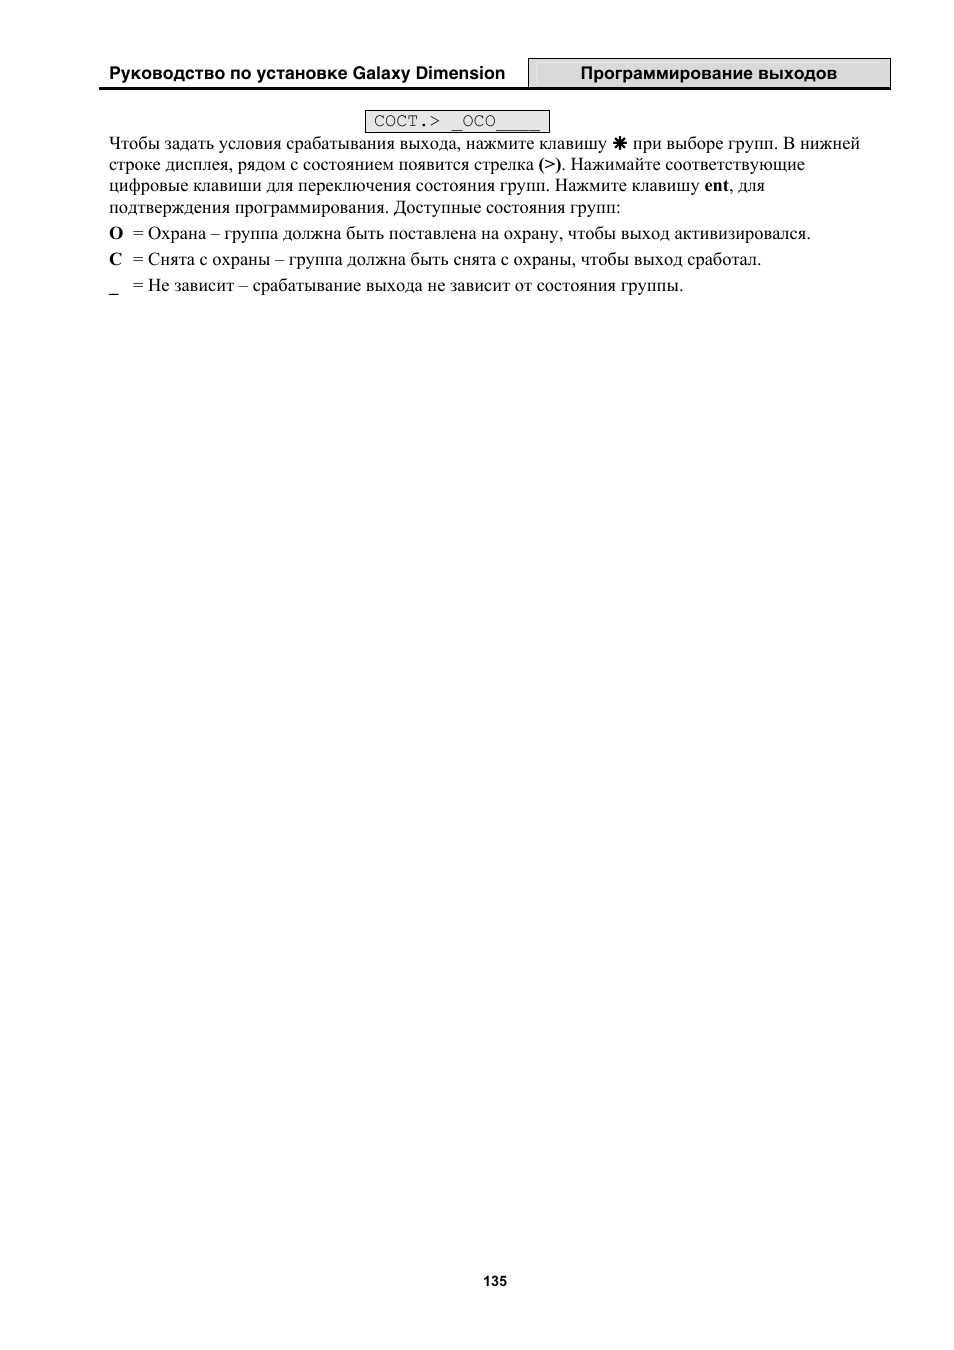 Инструкция по эксплуатации Honeywell Руководство по установке контрольных панелей серии Galaxy Dimension | Страница 155 / 260